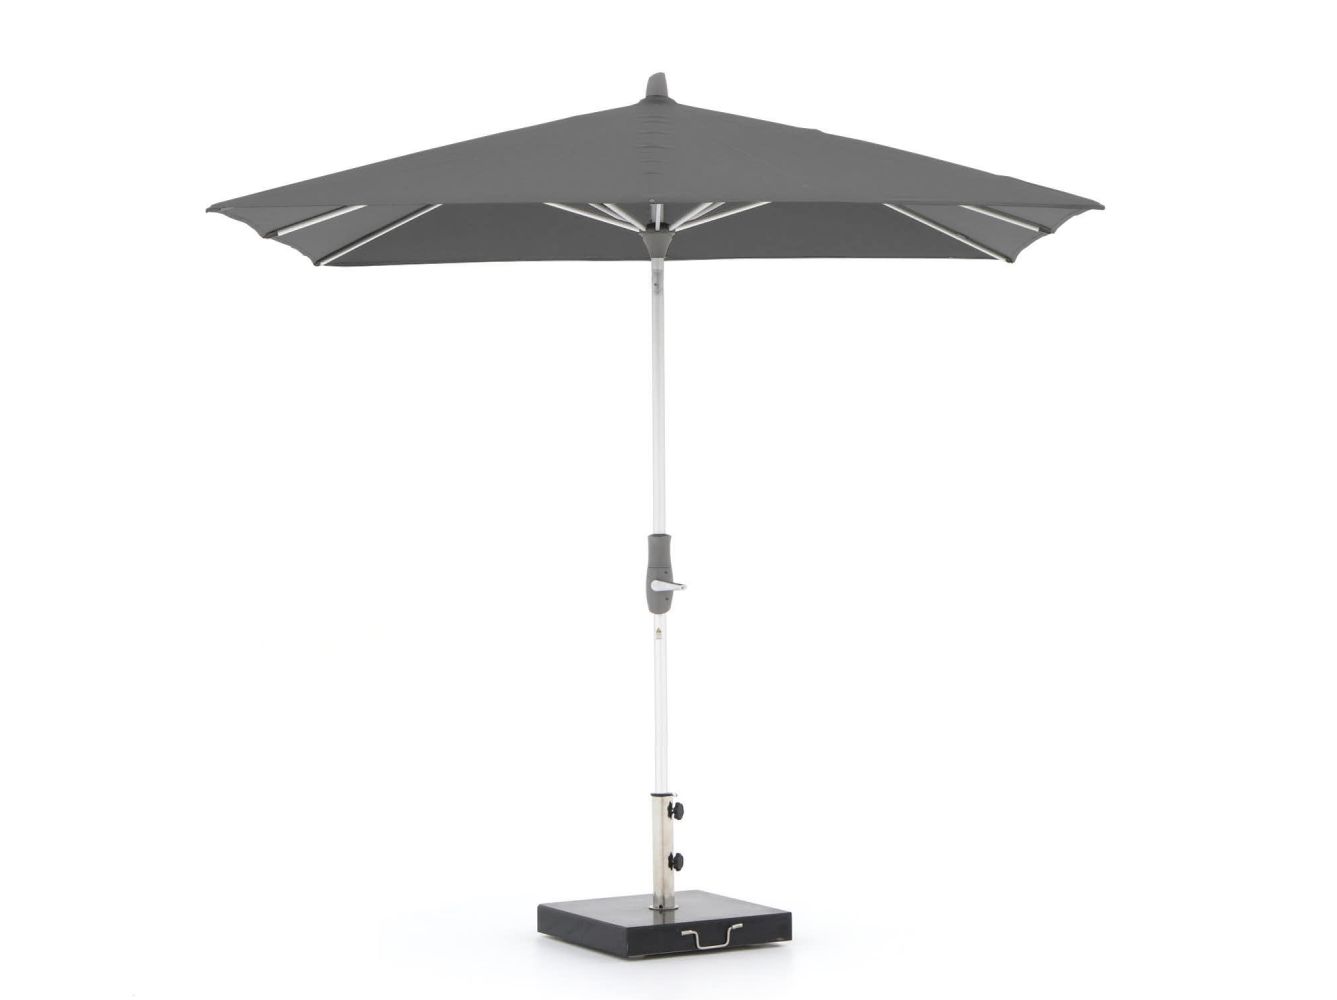 Glatz Alu-Twist parasol 240x240cm